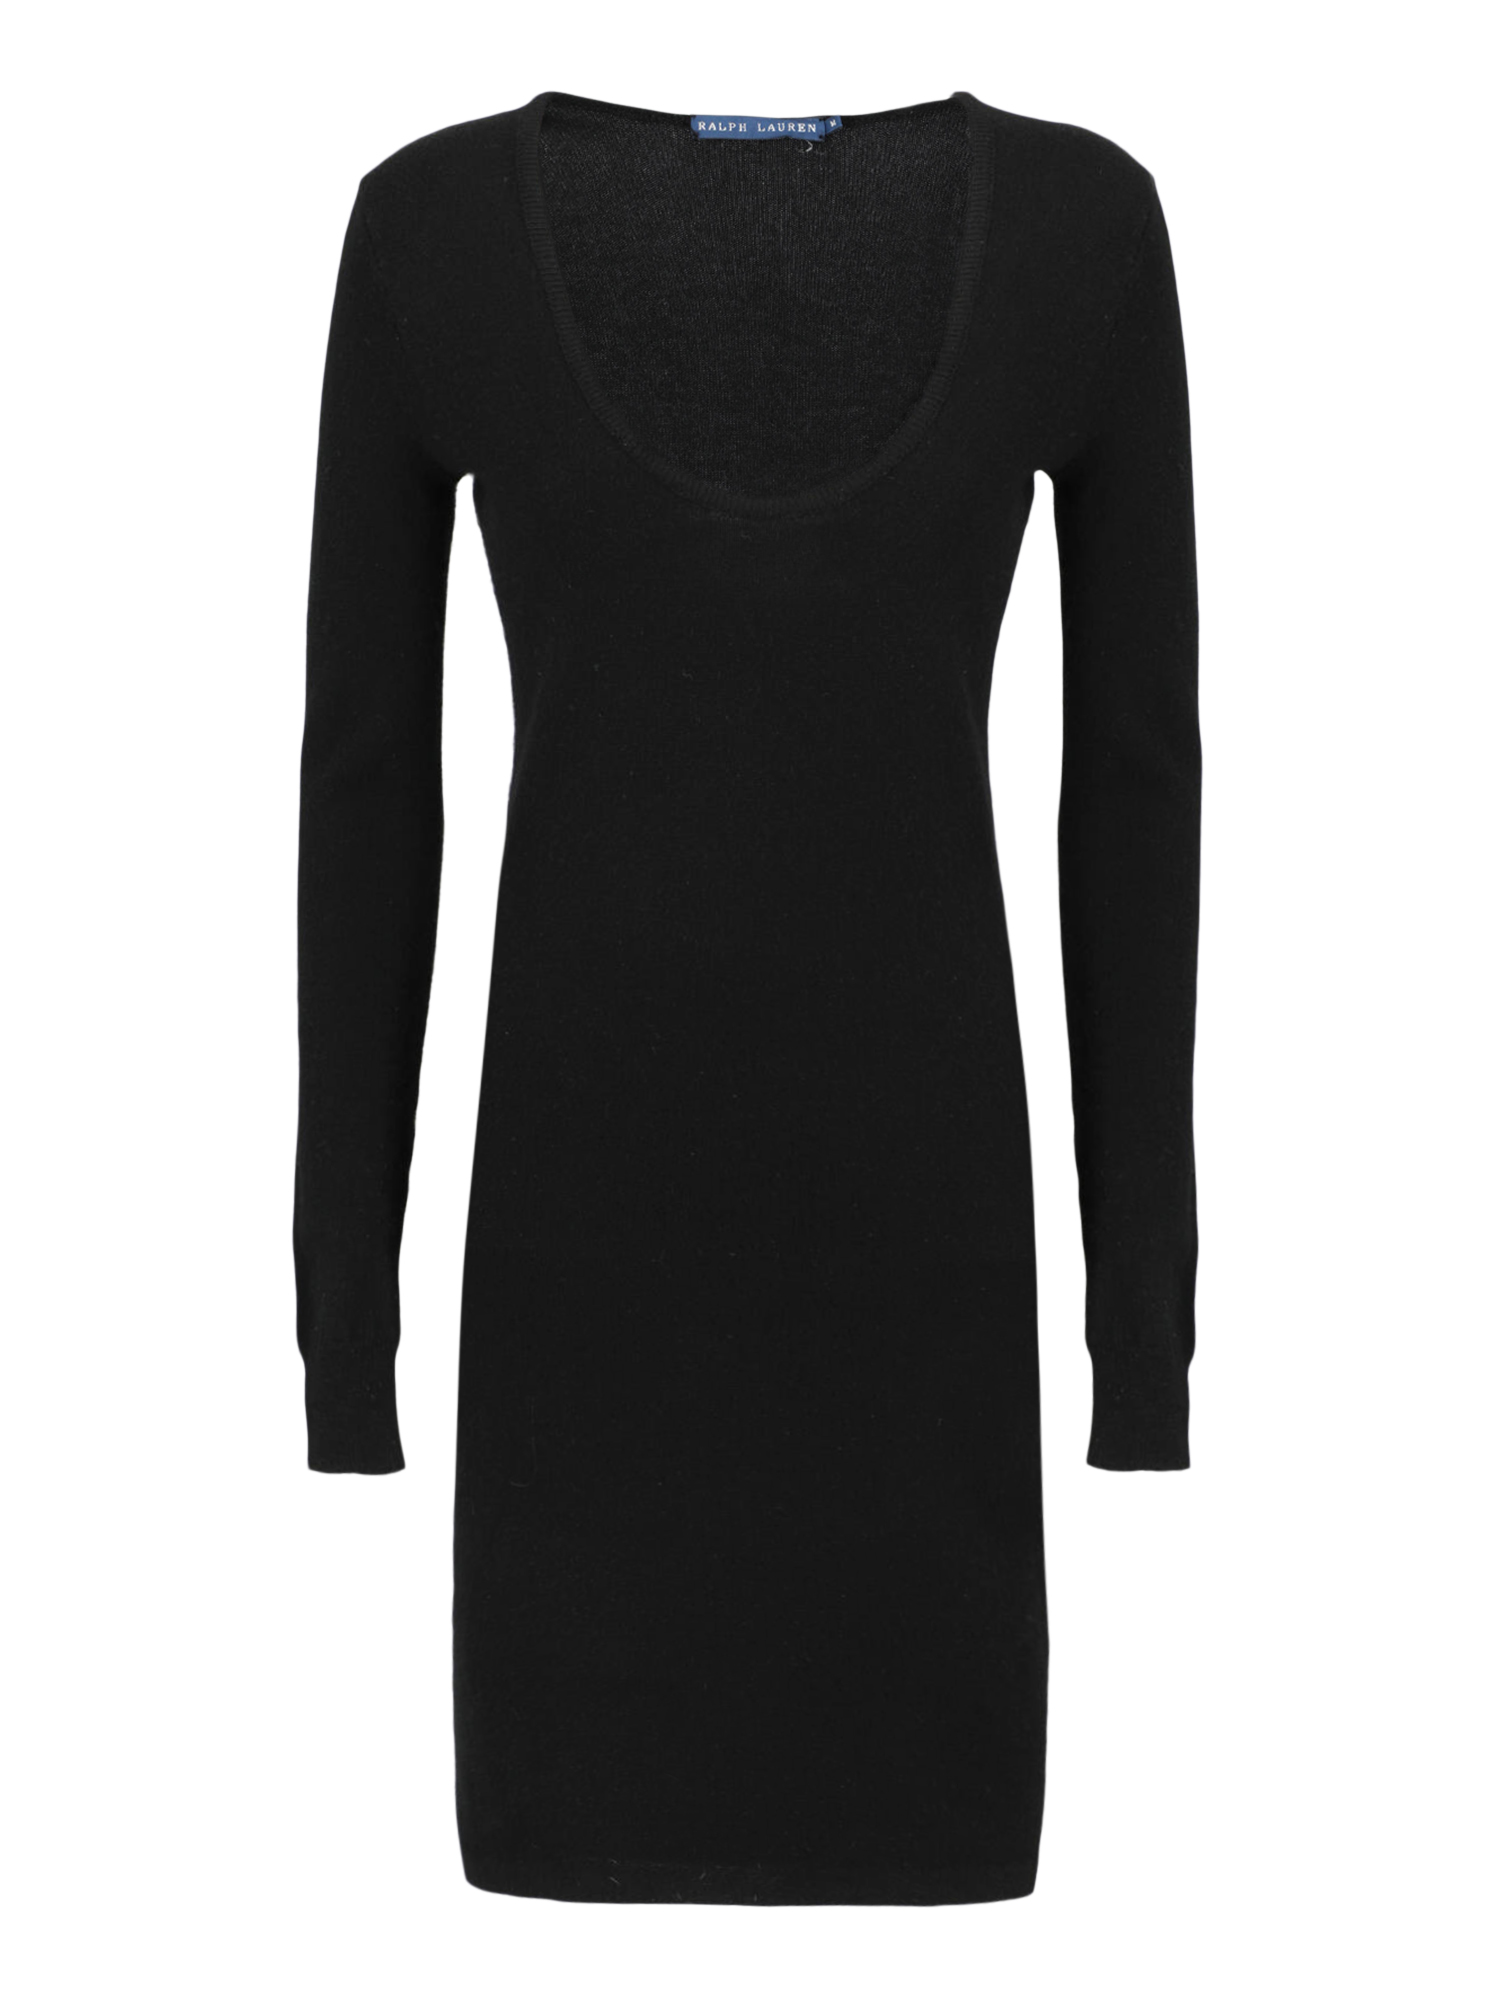 Robes Pour Femme - Ralph Lauren - En Wool Black - Taille:  -